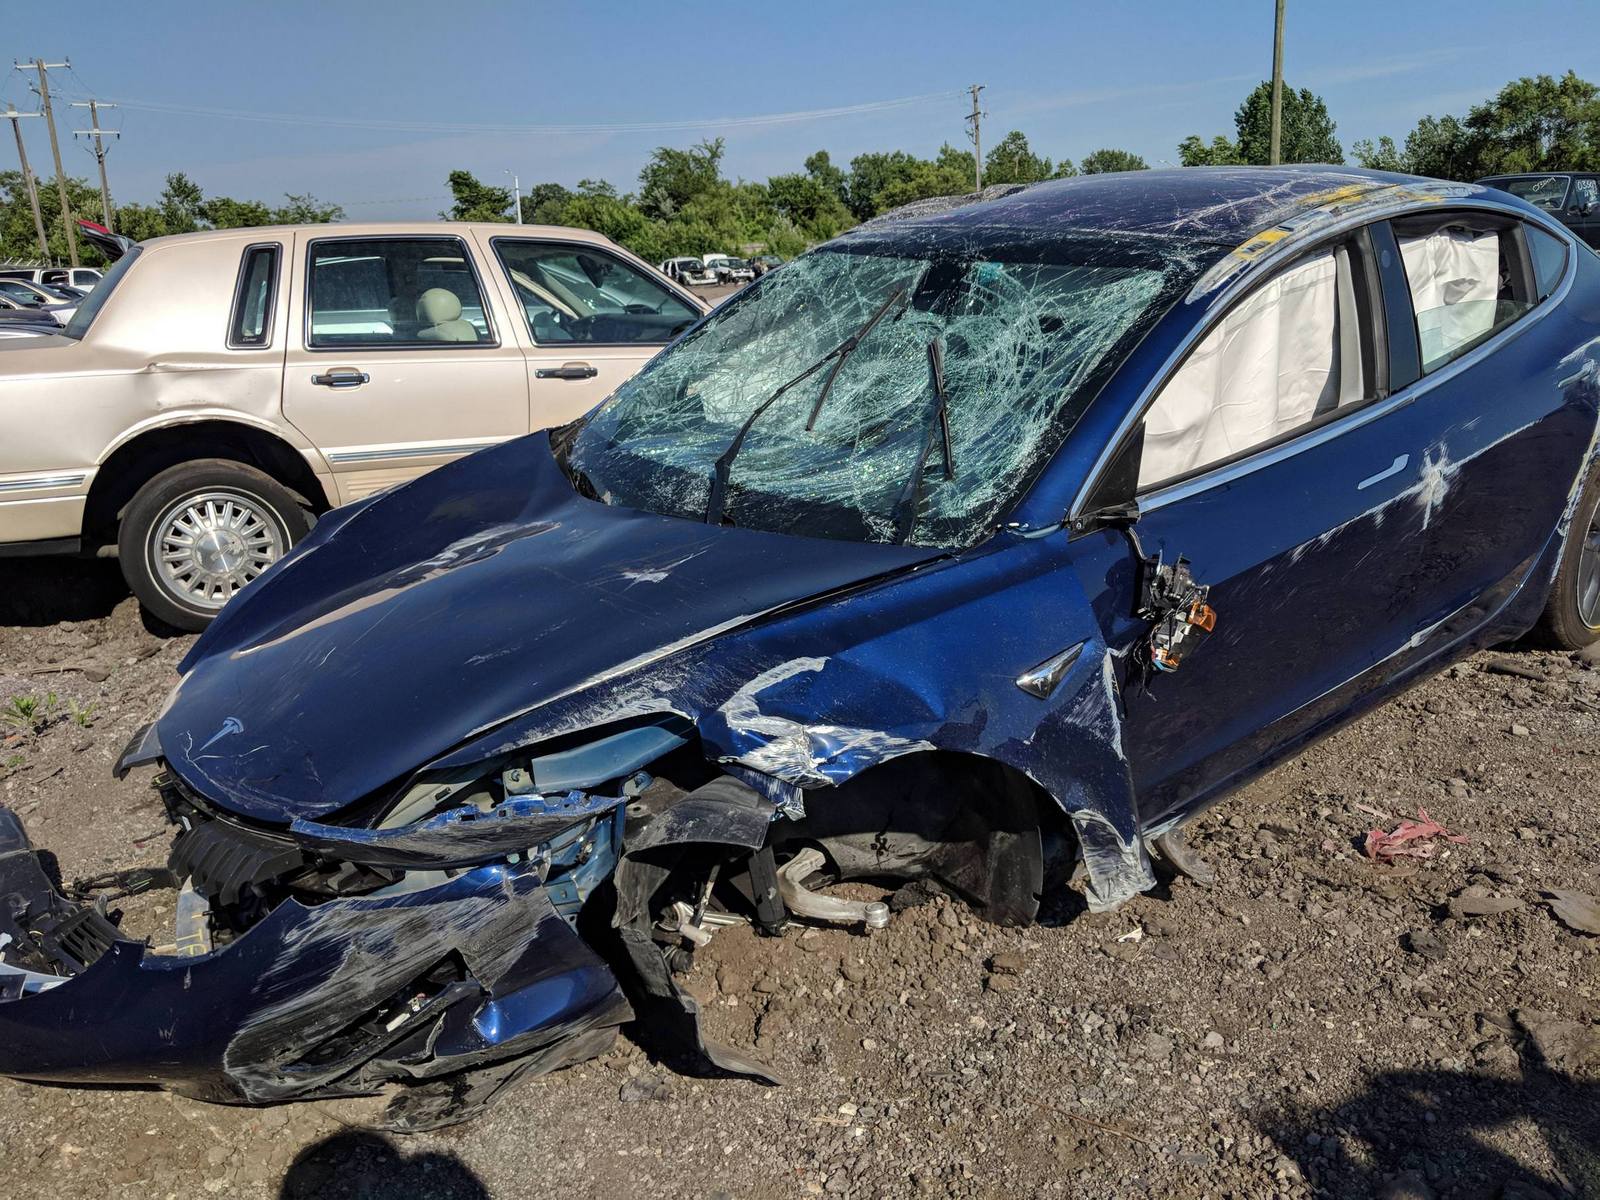 L’épave de la Tesla Model 3 après un terrible accident sur l’autoroute. La caisse a particulièrement bien résisté à plusieurs tonneaux. © StapleGun